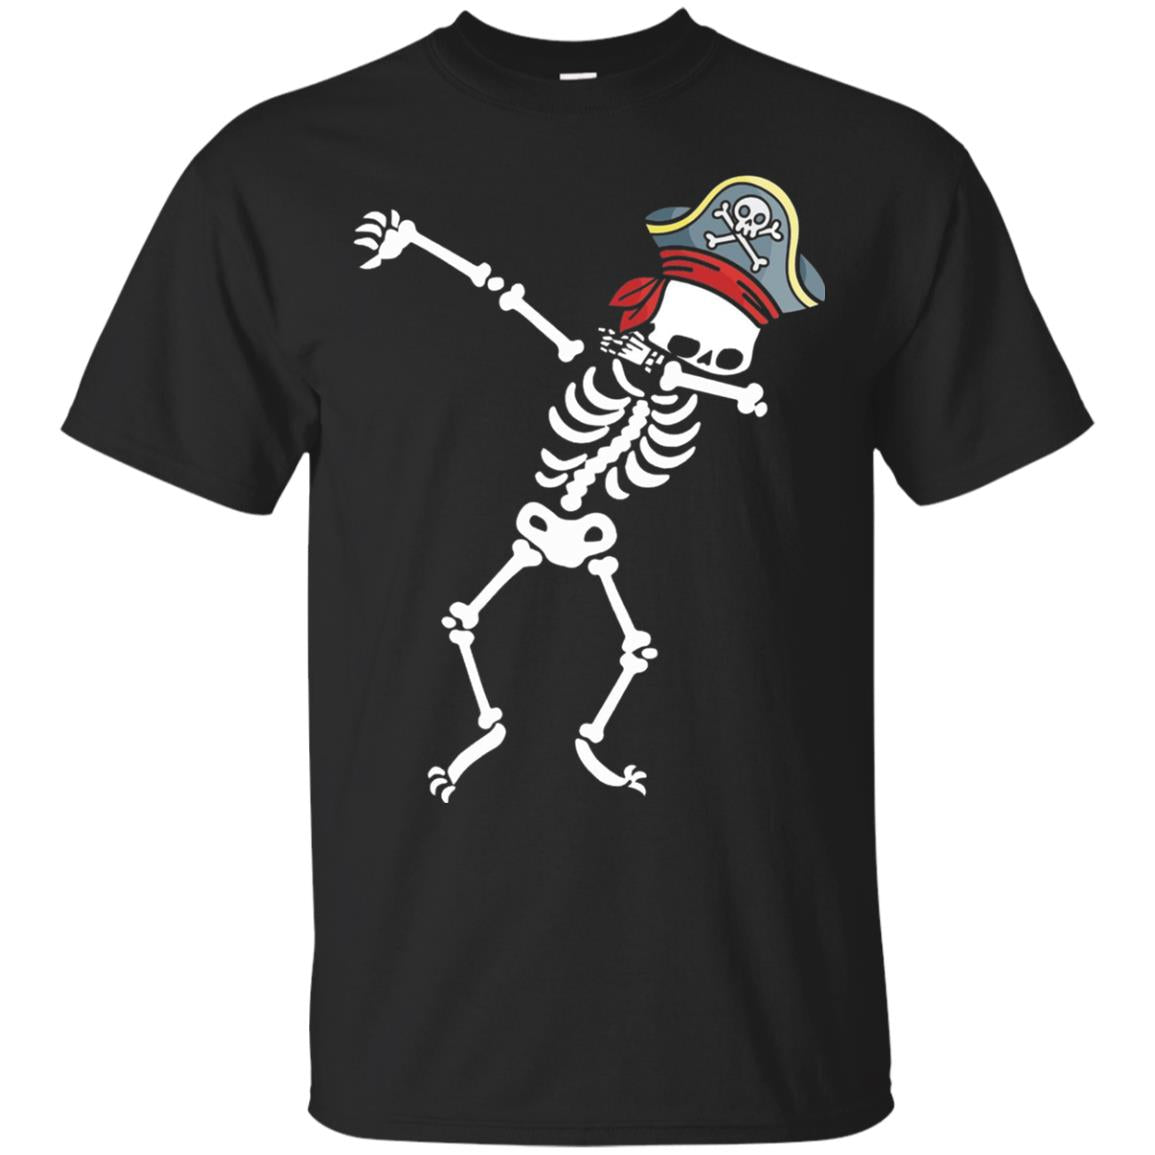 Dabbing Skeleton With Pirates Hat T-shirt